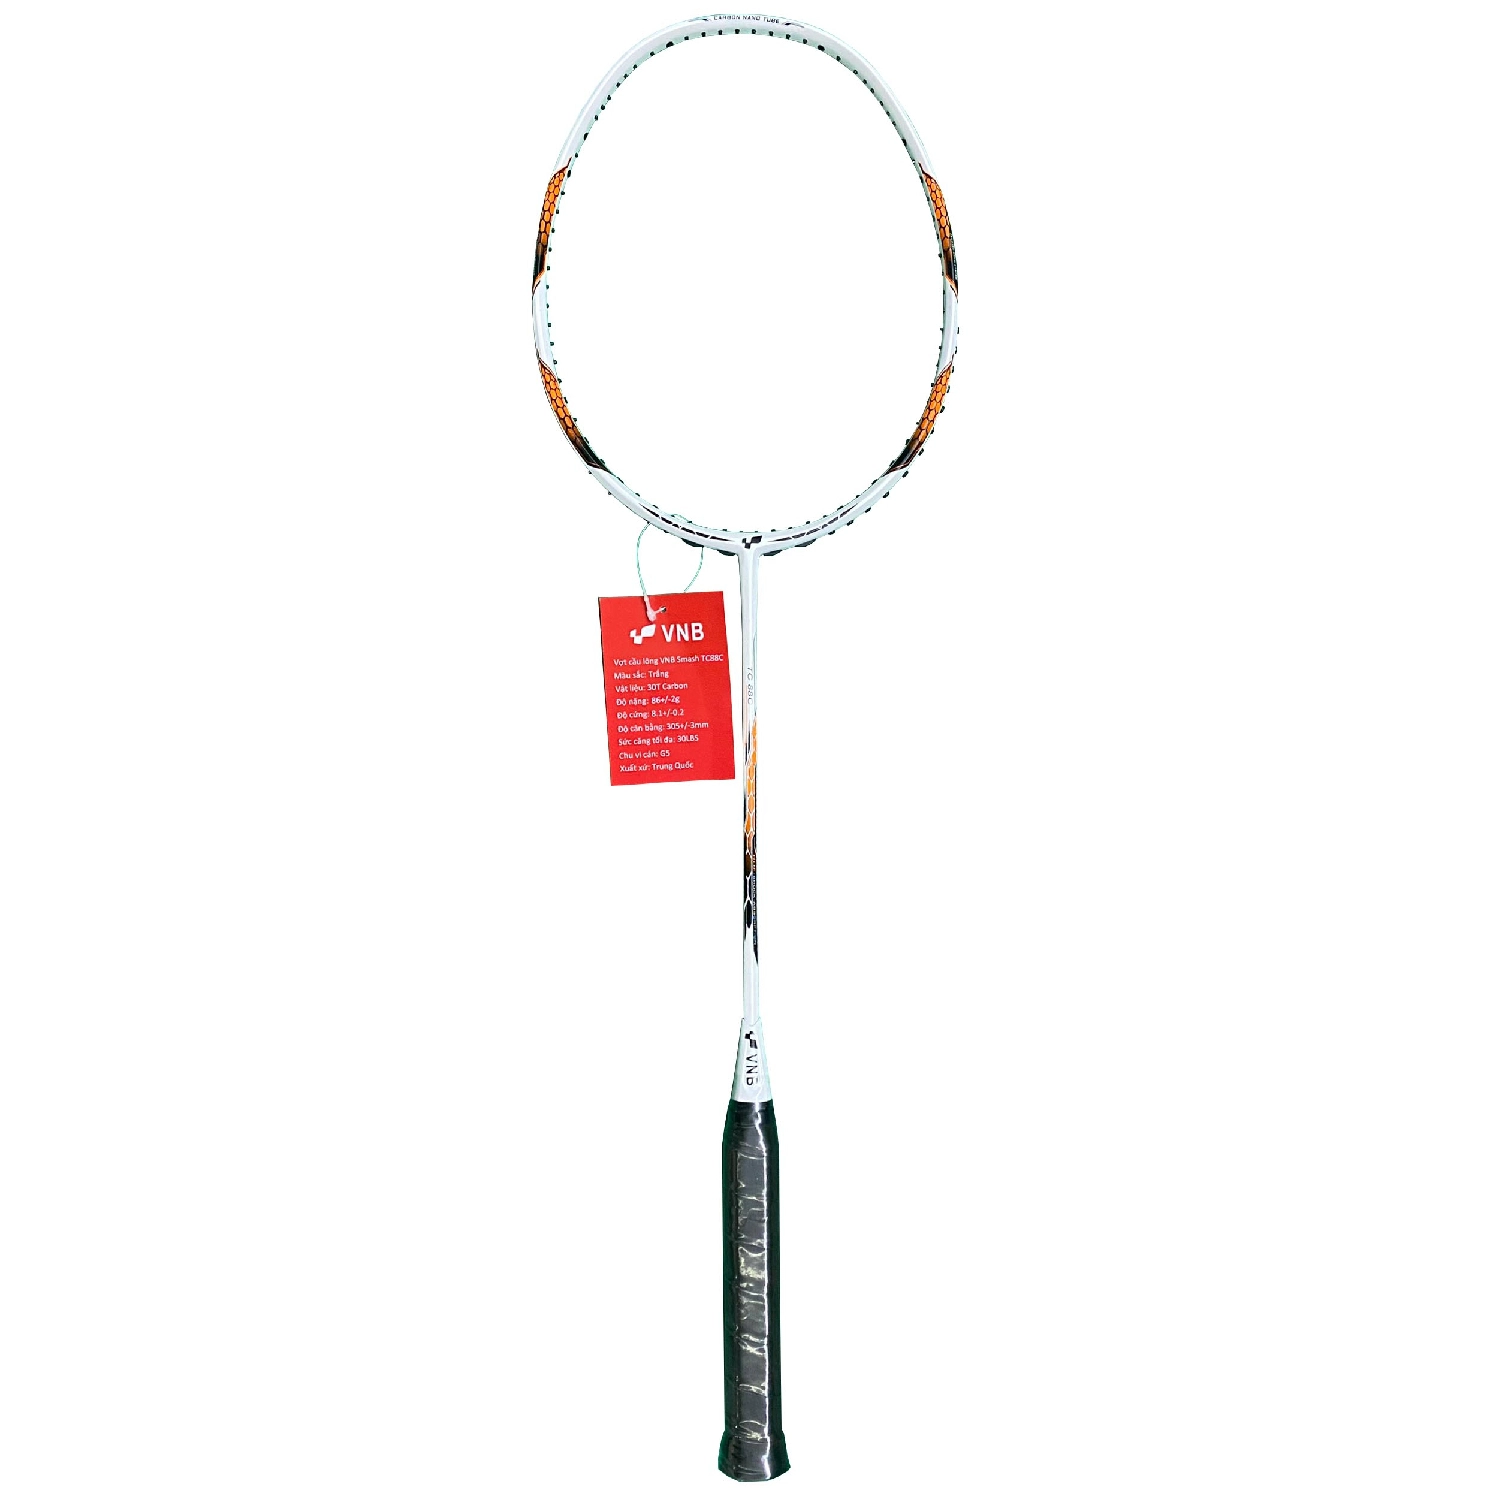 Vnb là thương hiệu vợt cầu lông nội địa được sử dụng phổ biến